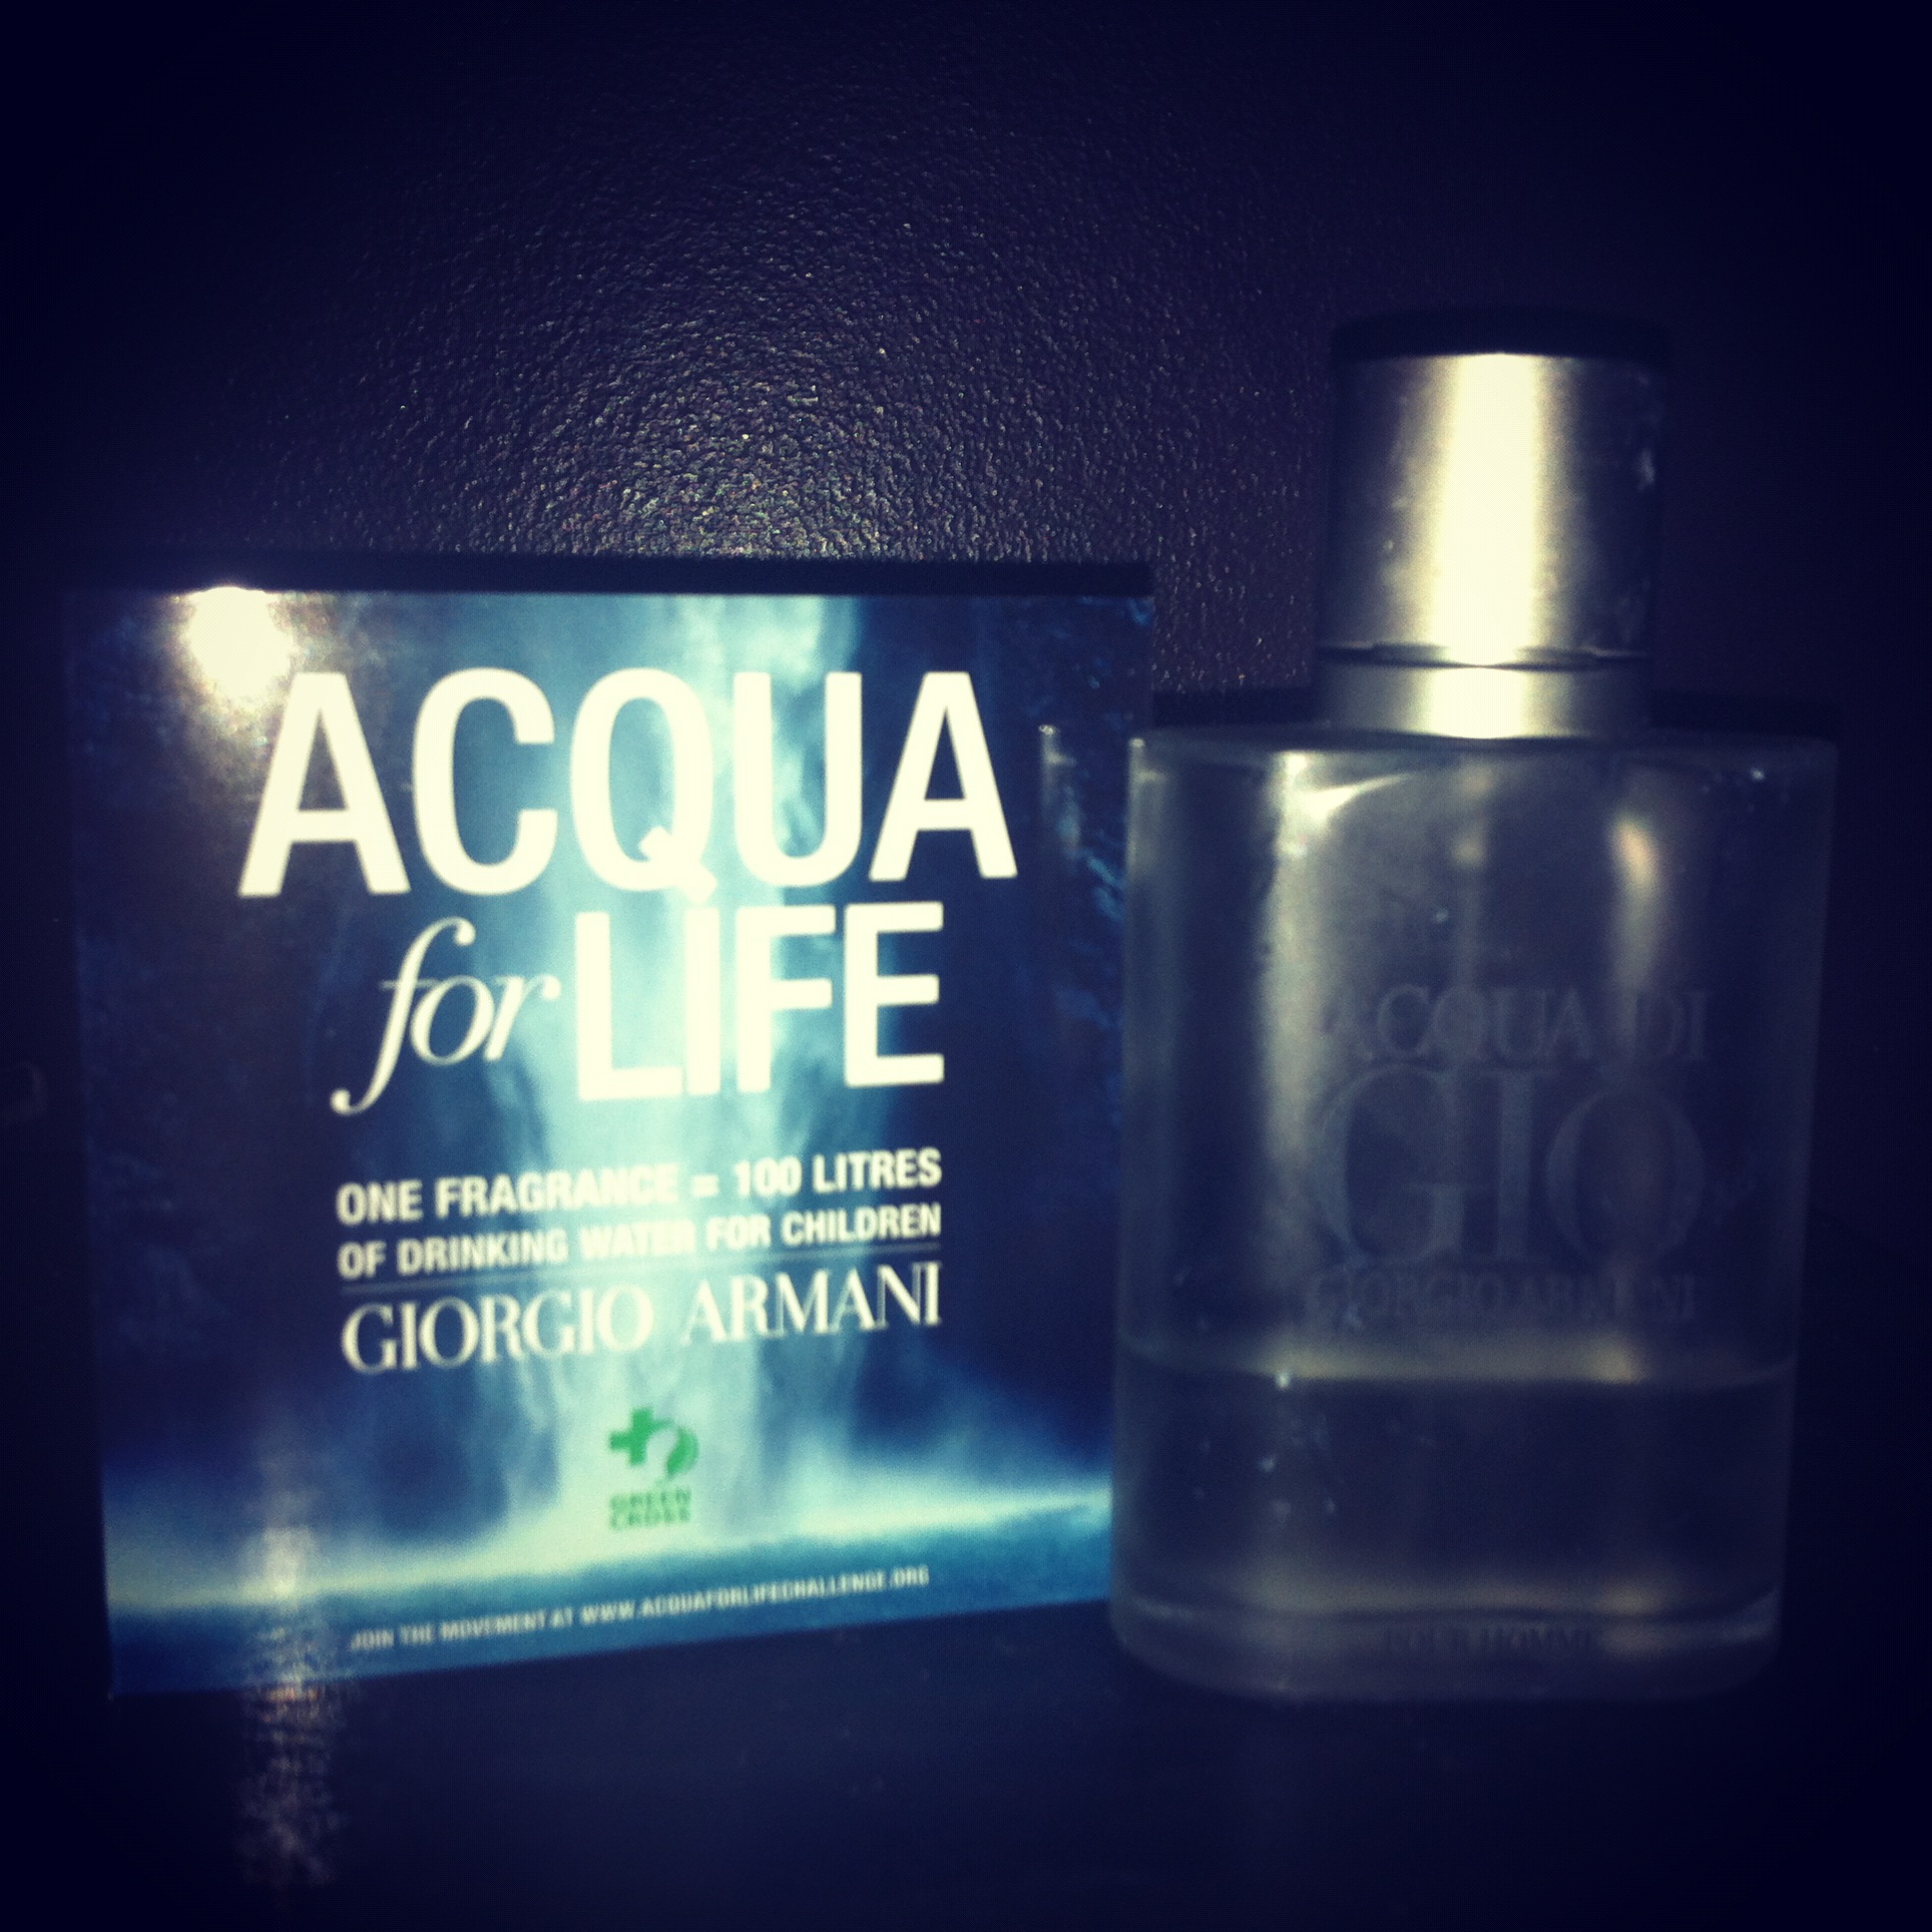 Acqua for Life